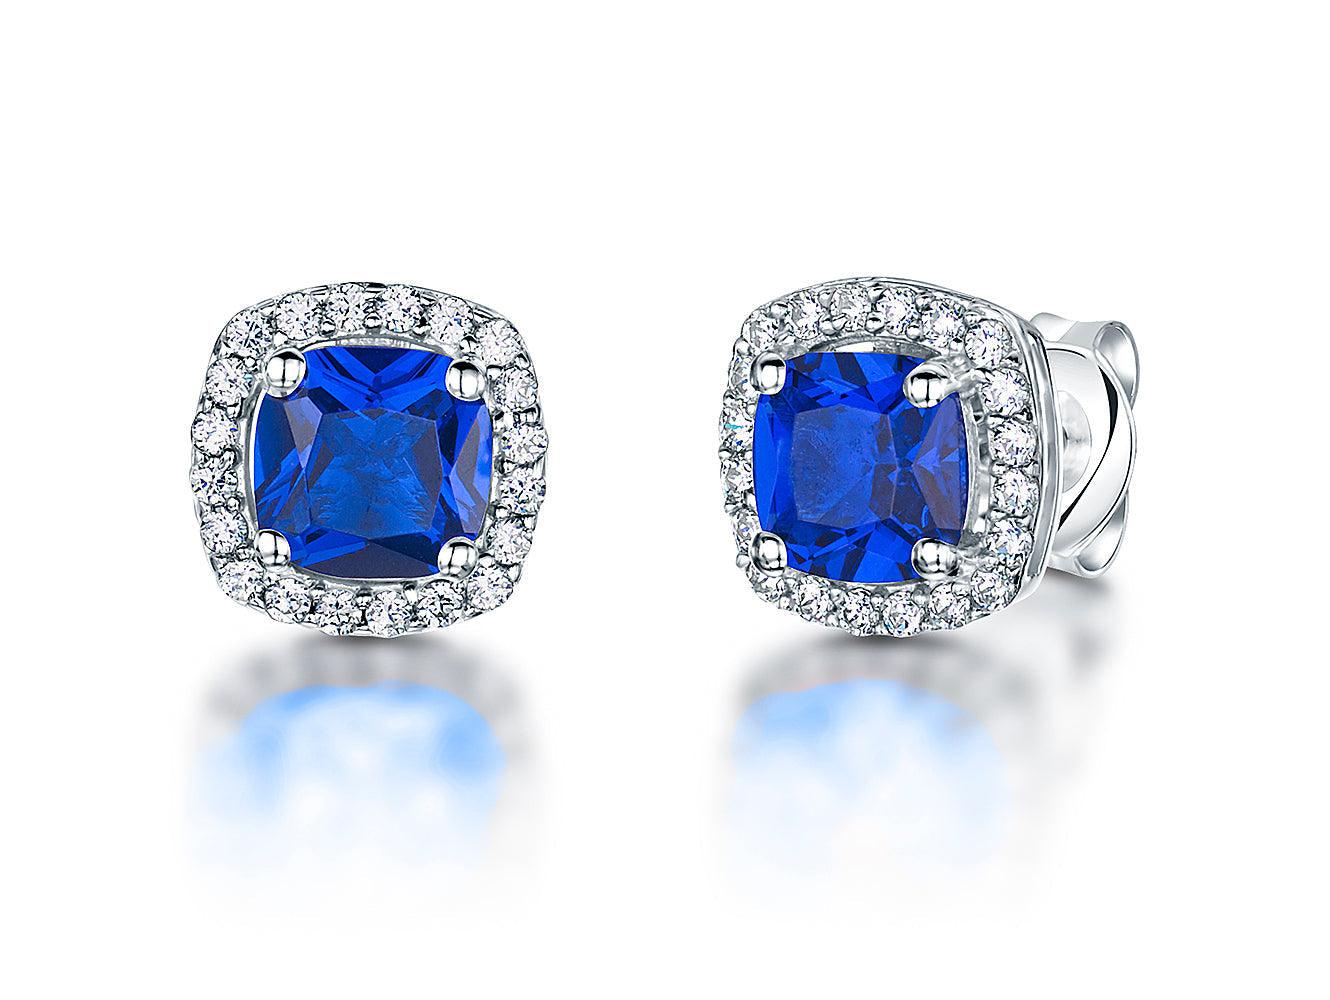 Jools Deep Blue Cubic Zirconia Cushion Cut Halo Stud Earrings - Rococo Jewellery